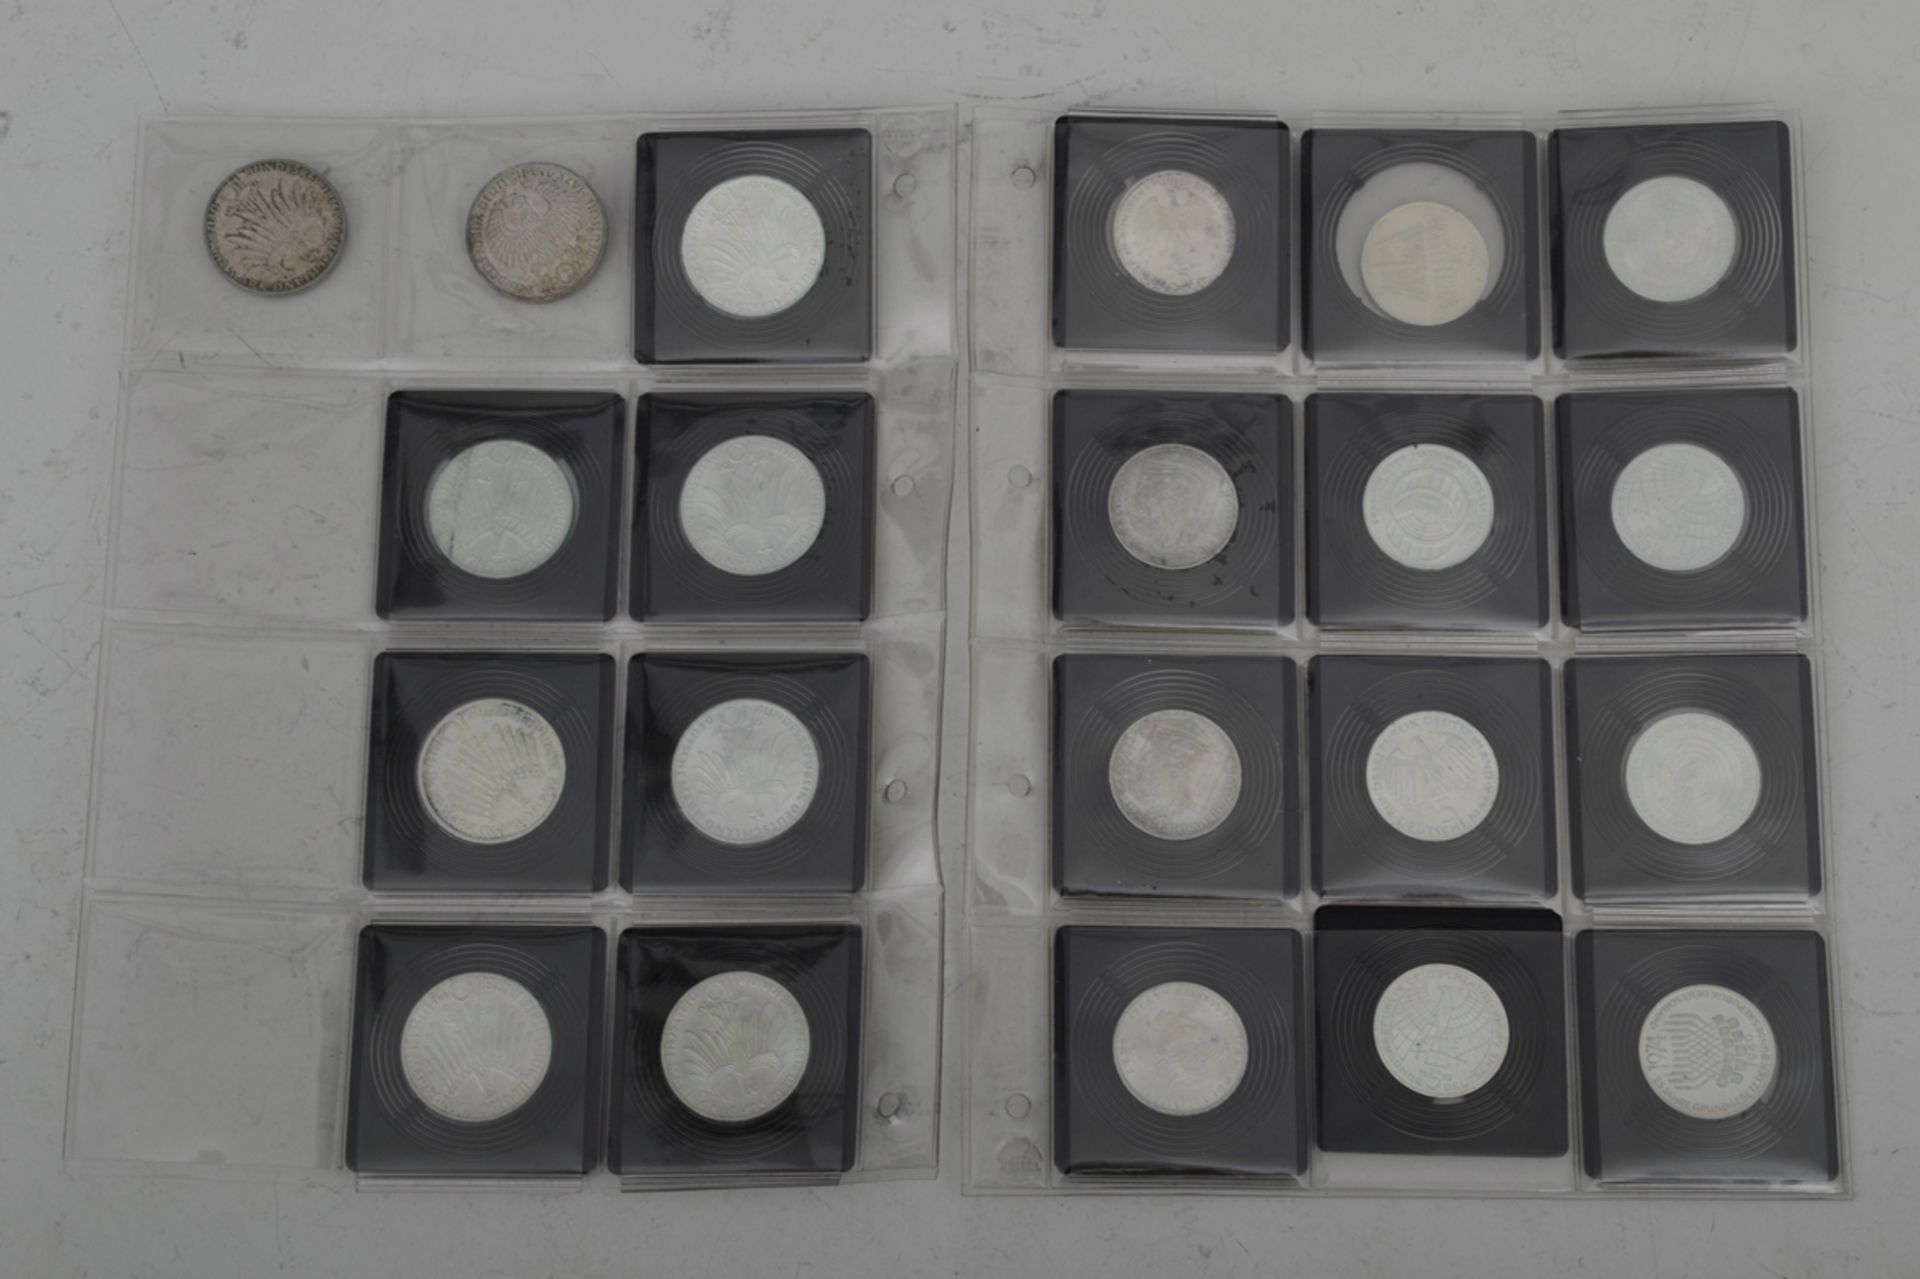 110tlg. Sammlung von 41 x 5 DM und 69 x 10 DM Münzen, teilweise Silber, zusammen ca. 895,- DM. Vers - Bild 7 aus 9